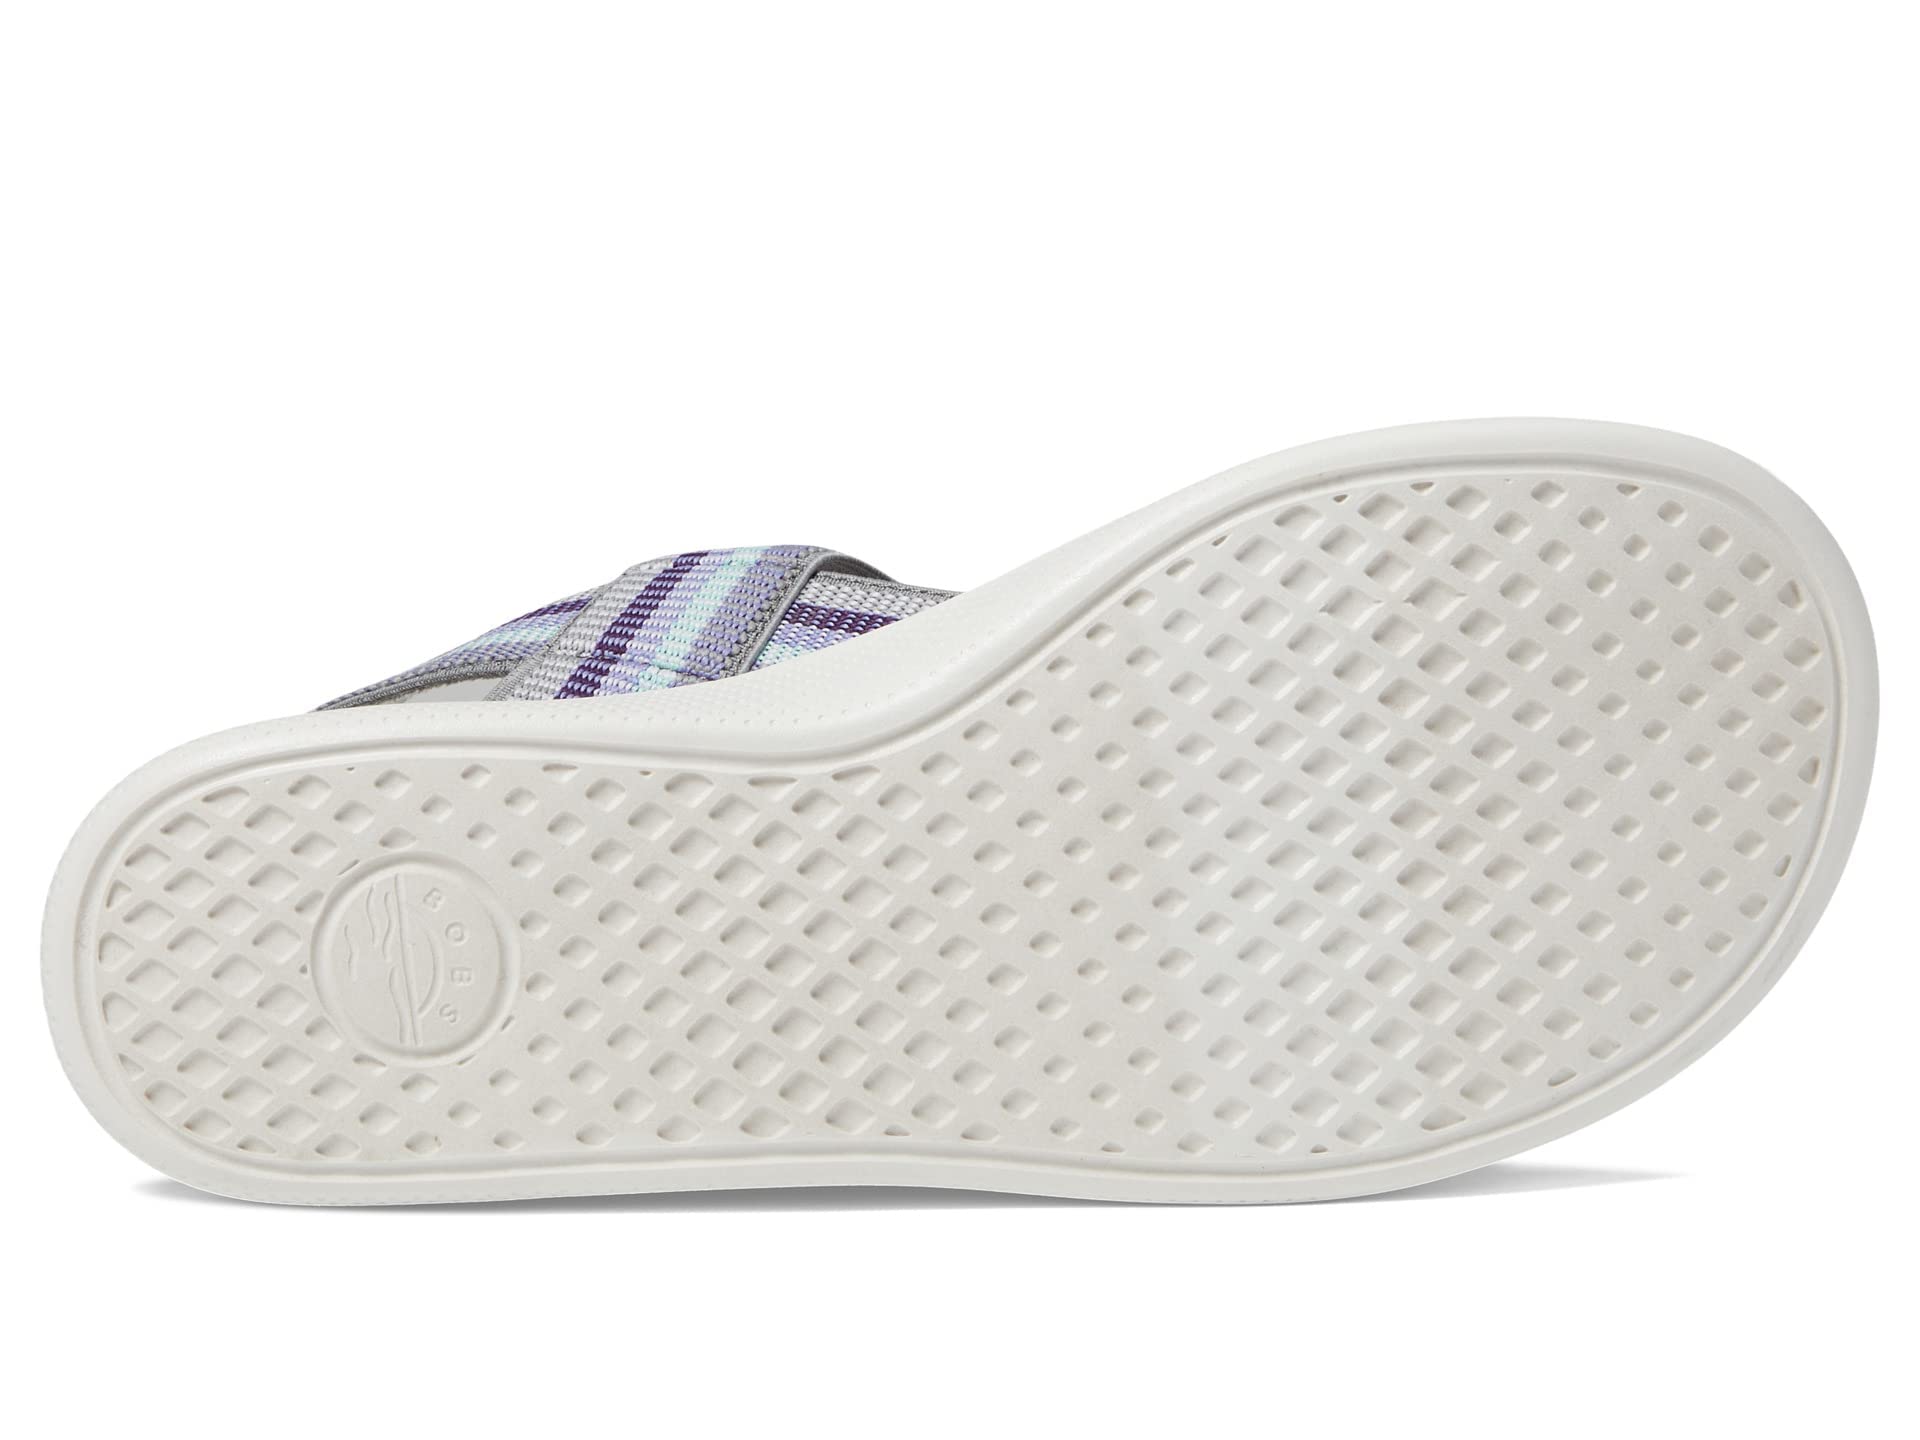 Skechers Women's 114400 Sandal, Purple Multi, 8